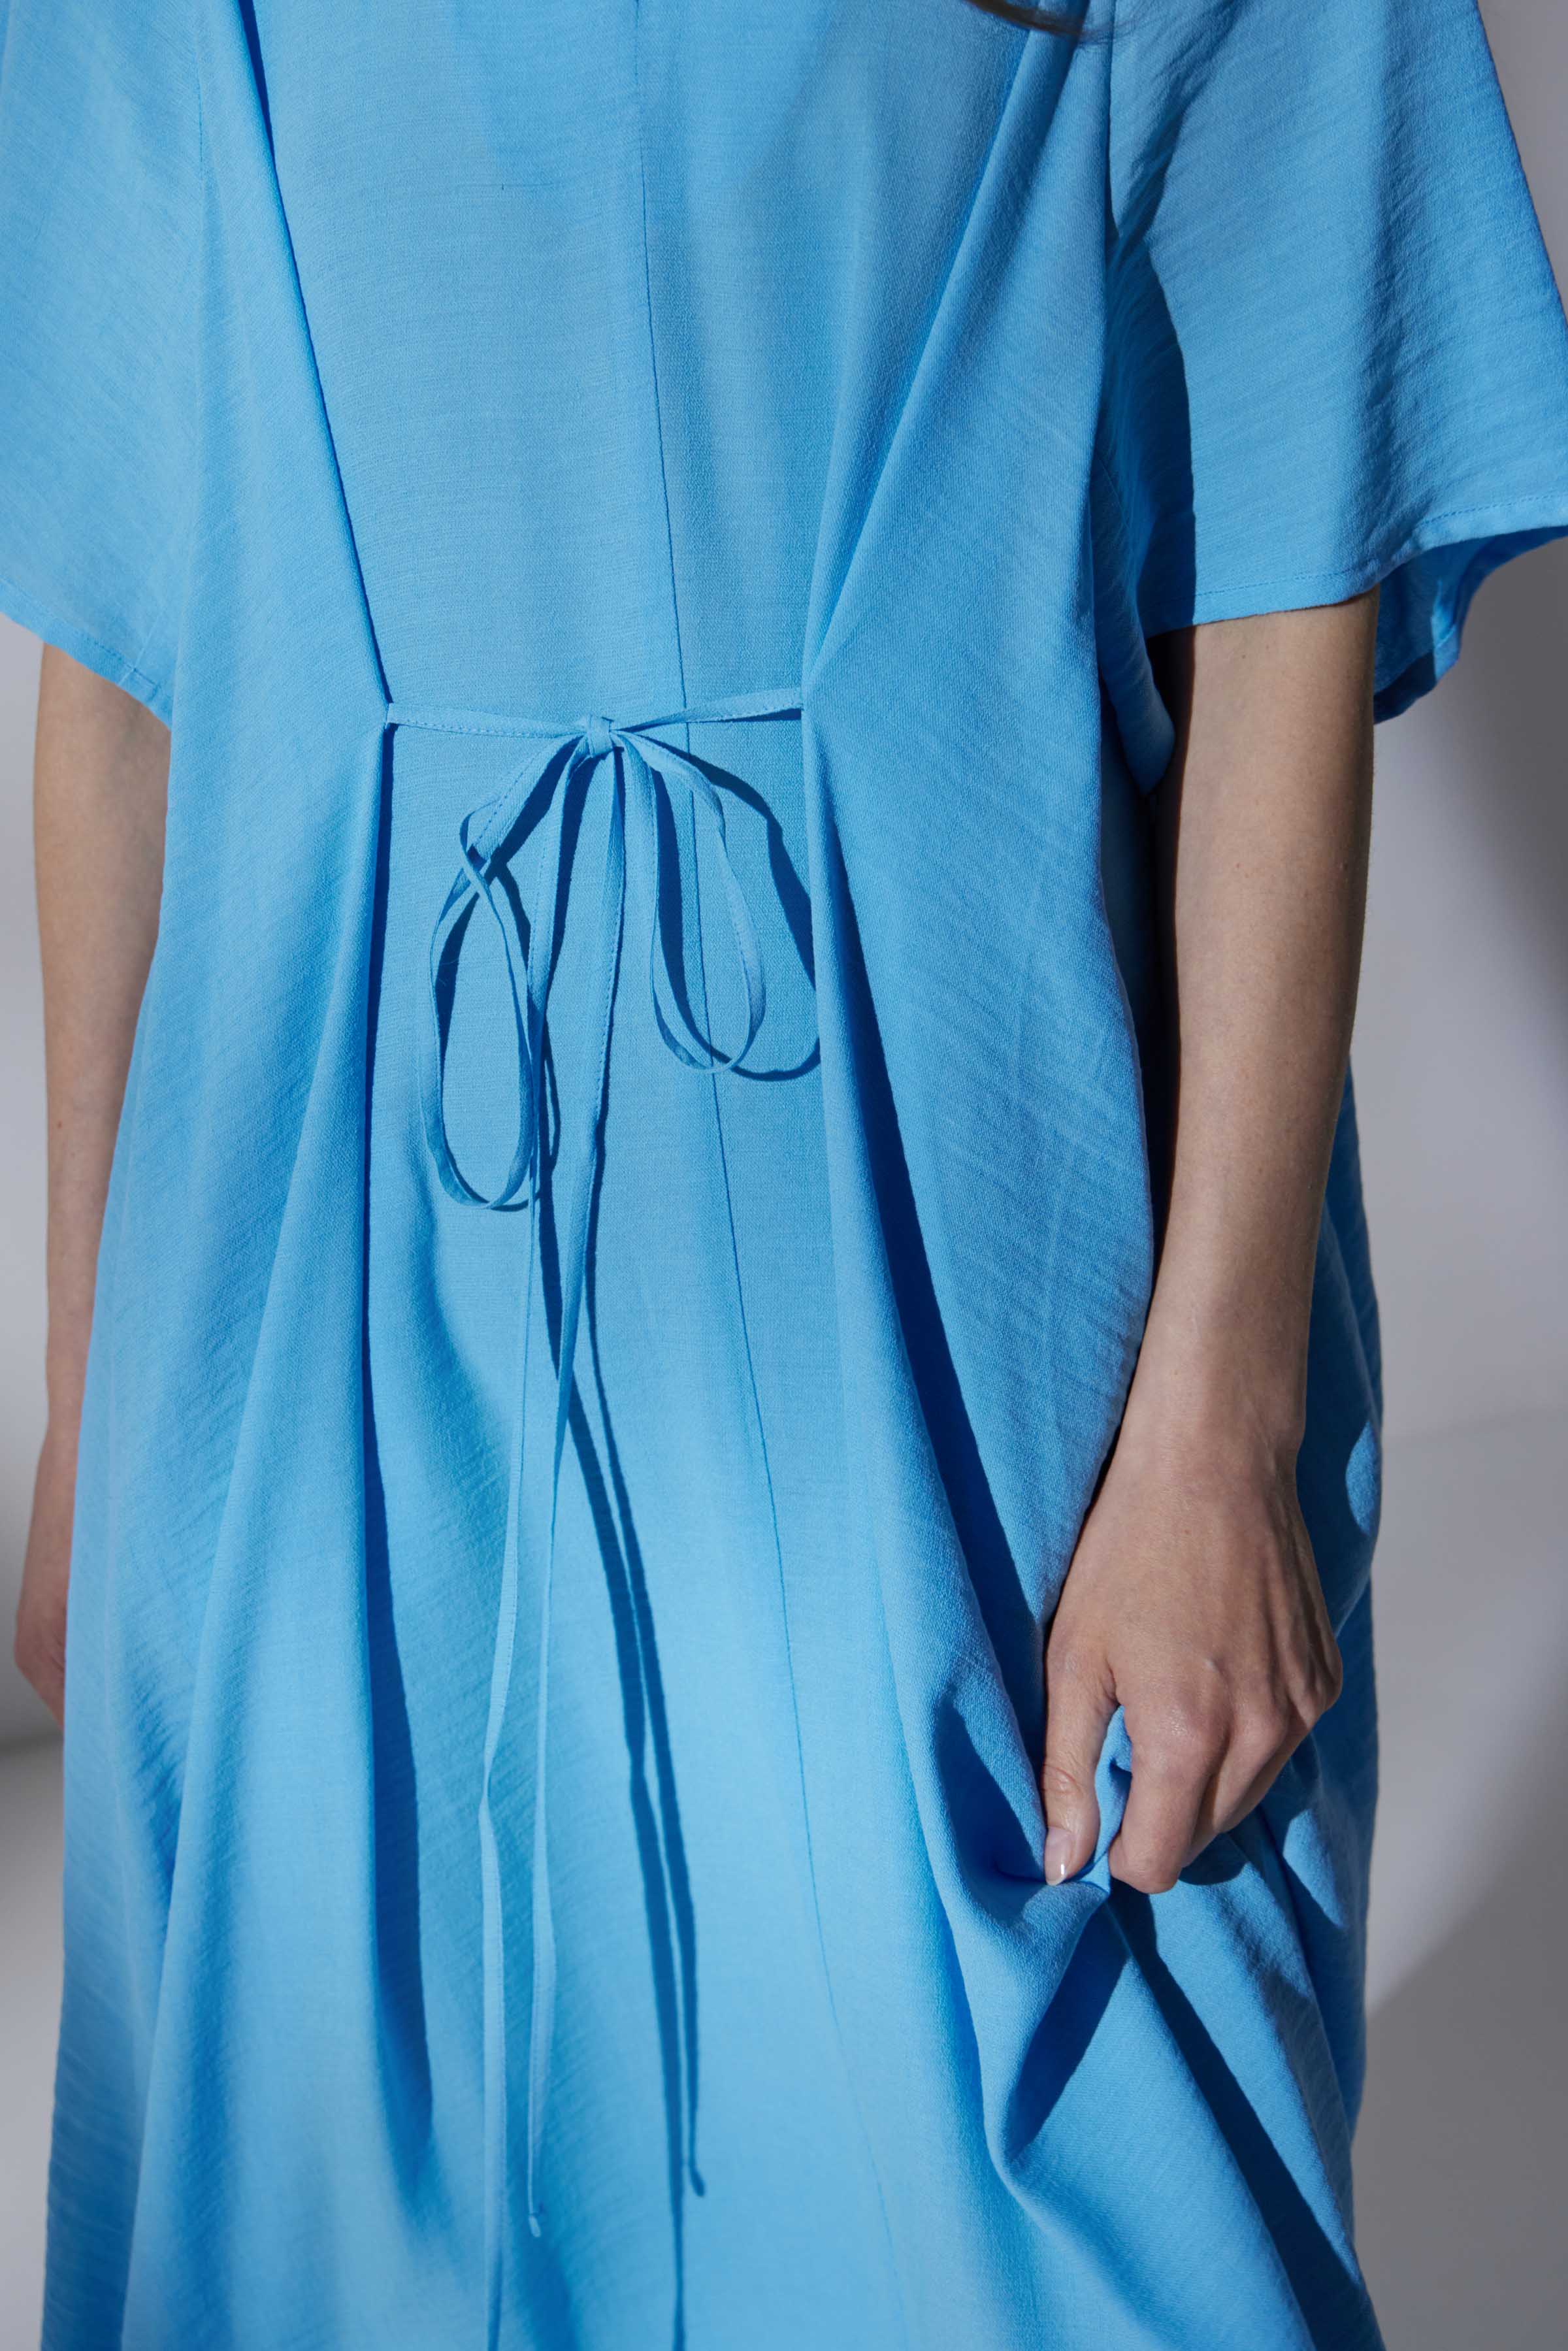 Платье Реглан, завязки, креп 35 Лазурь (azure) от Lesel (Лесель)! Заказывайте по ✆ 8 (800) 777 02 37